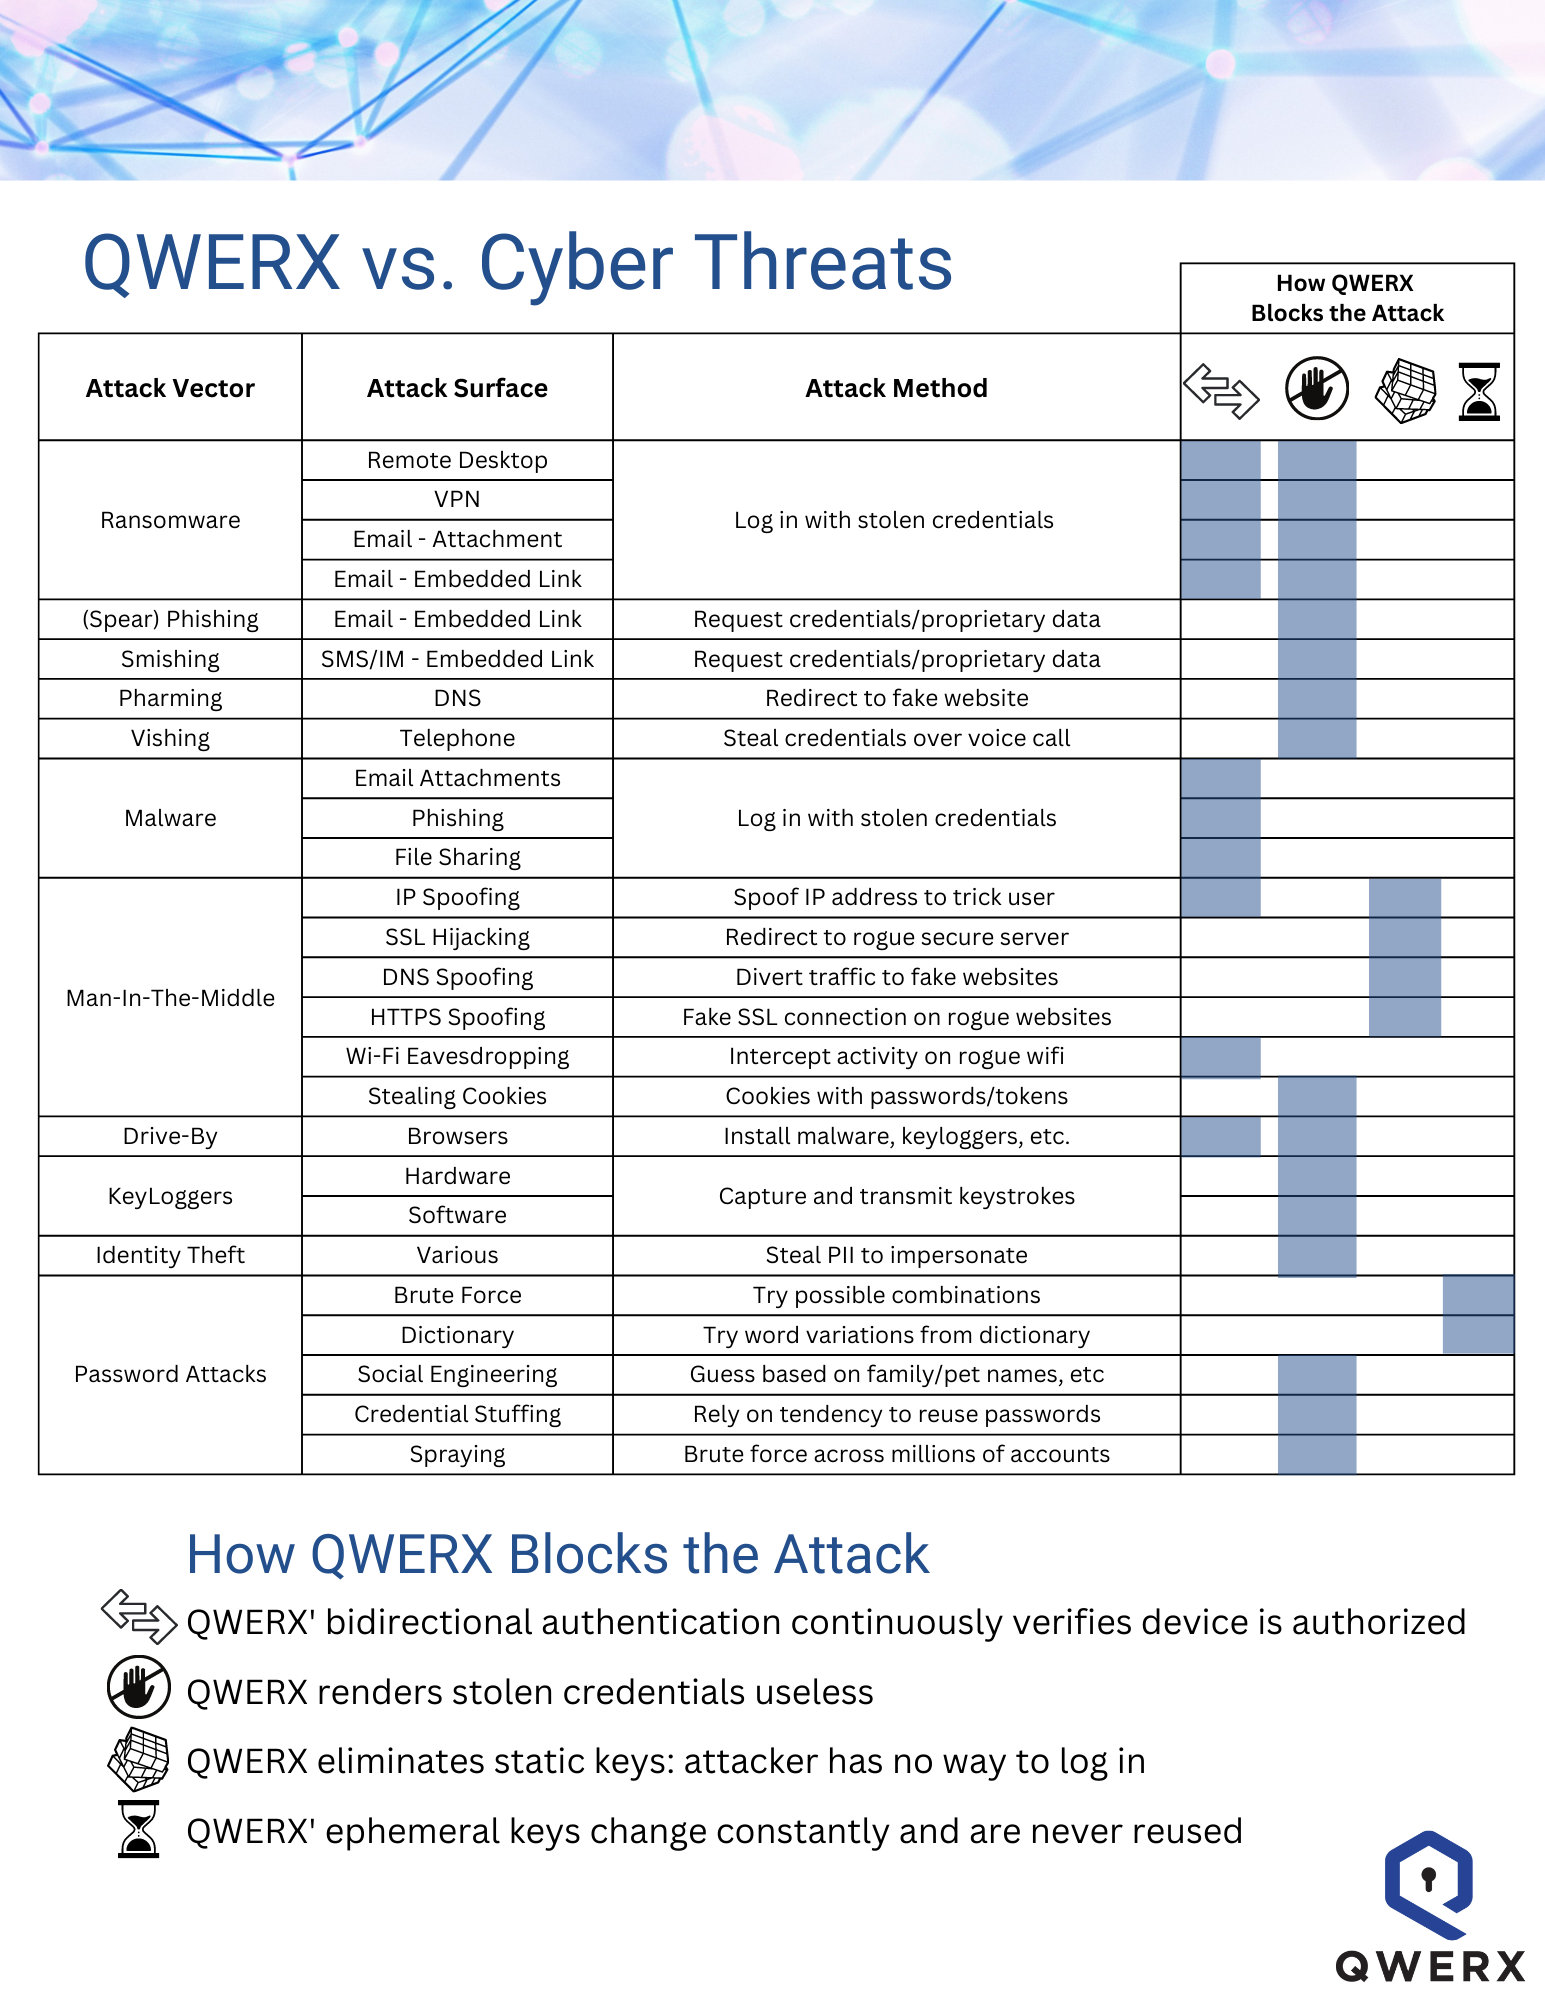 QWERX-vs-Cyber-Threats-chart